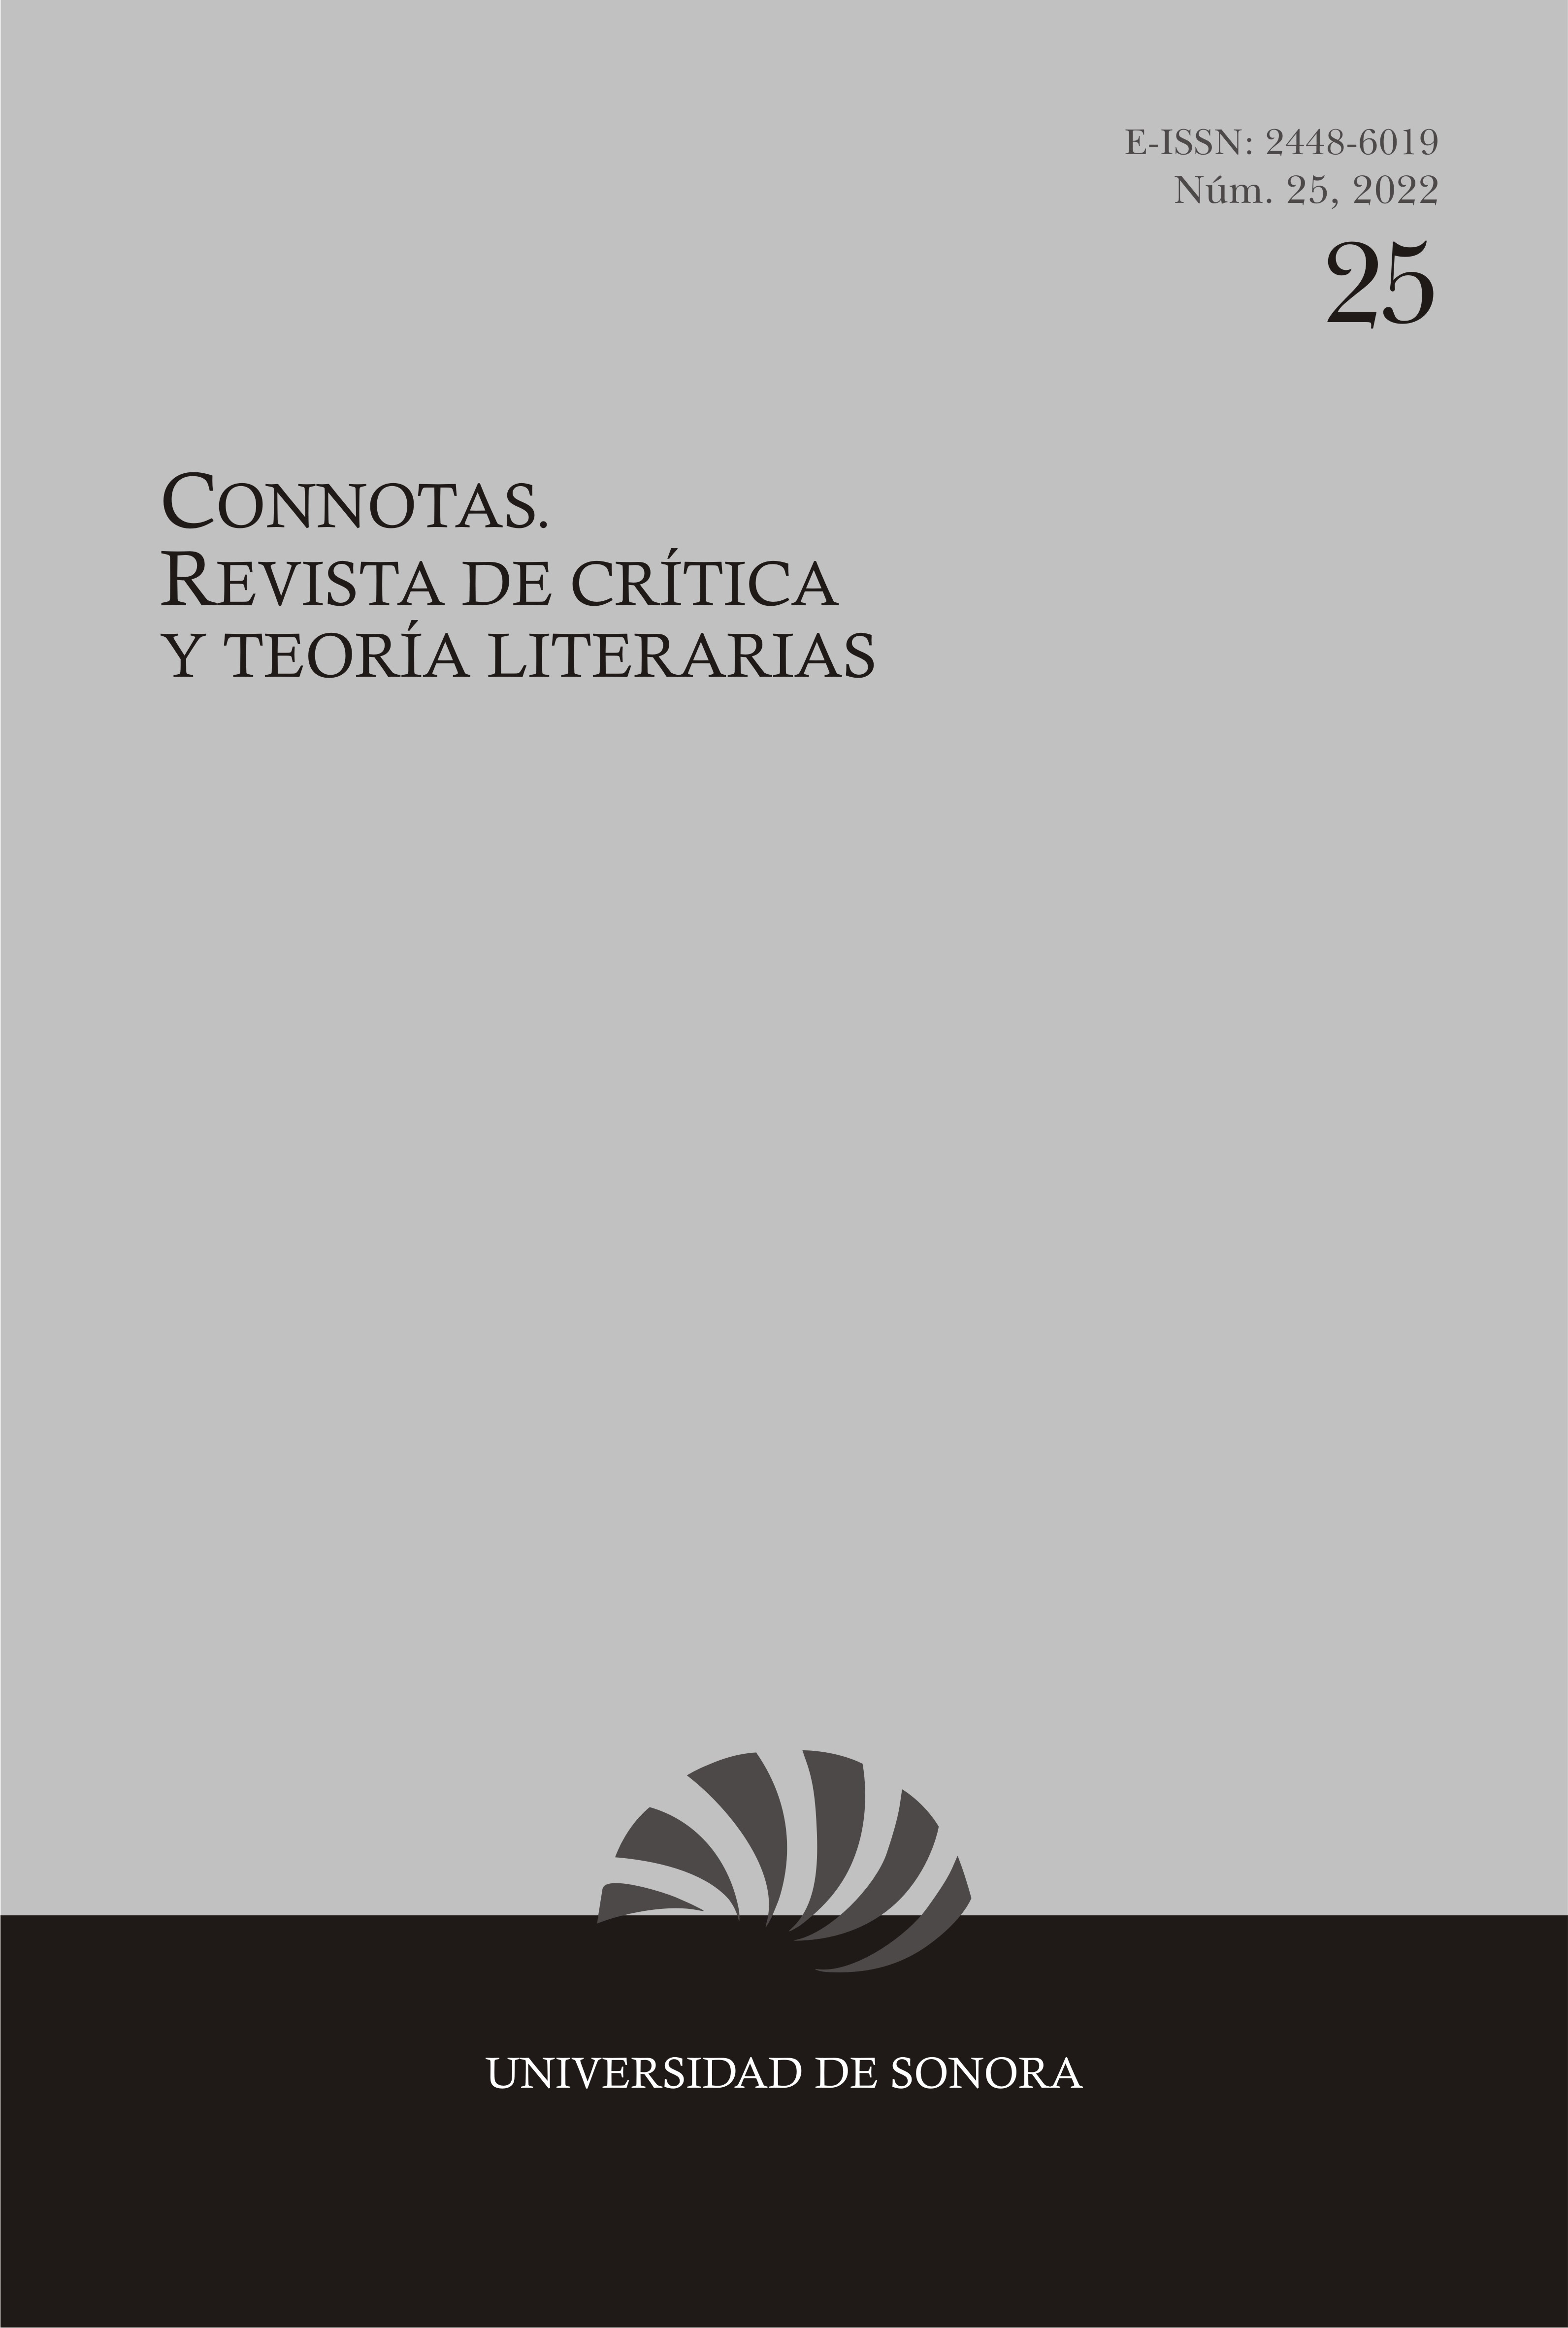 					Ver Núm. 25 (2022): Connotas. Revista de crítica y teoría literarias
				